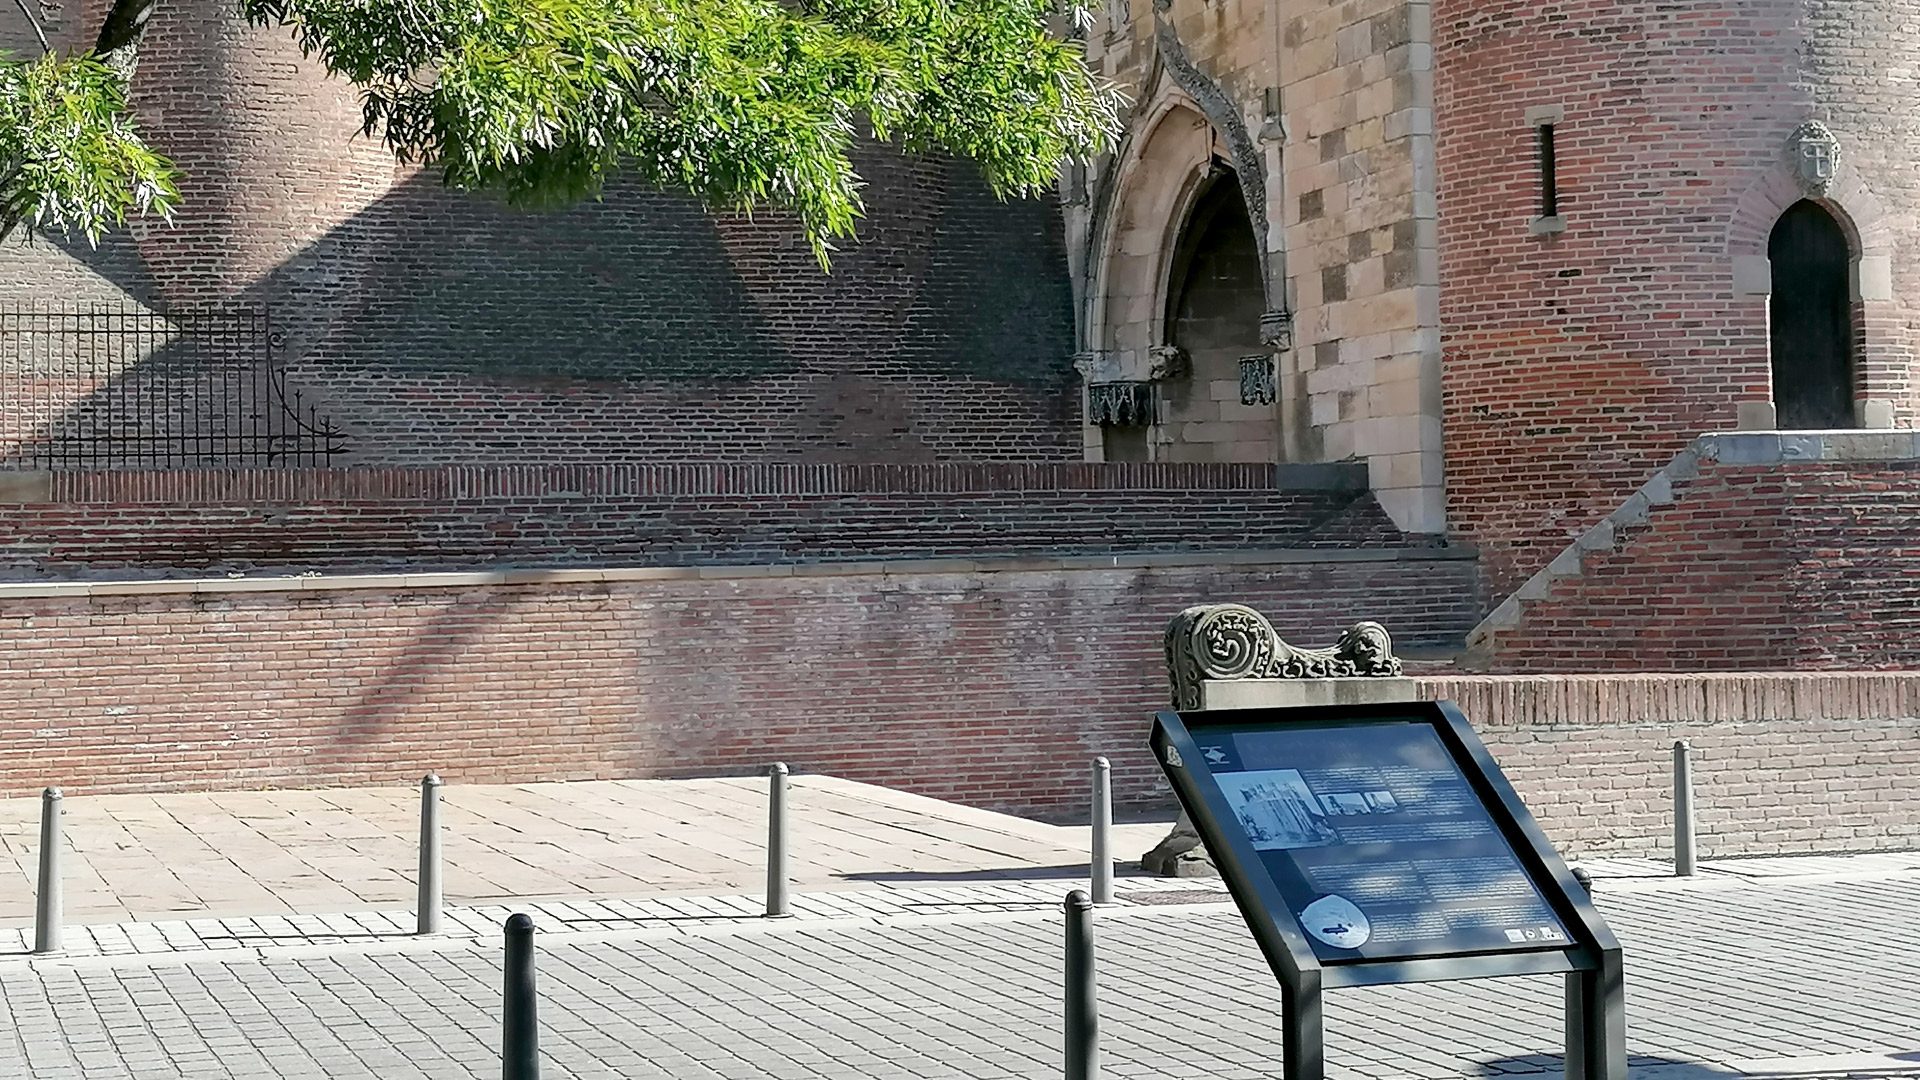 3 percorsi del patrimonio segnalati ad Albi, qui un pannello esplicativo davanti alla porta della cattedrale di Sainte-Cécile